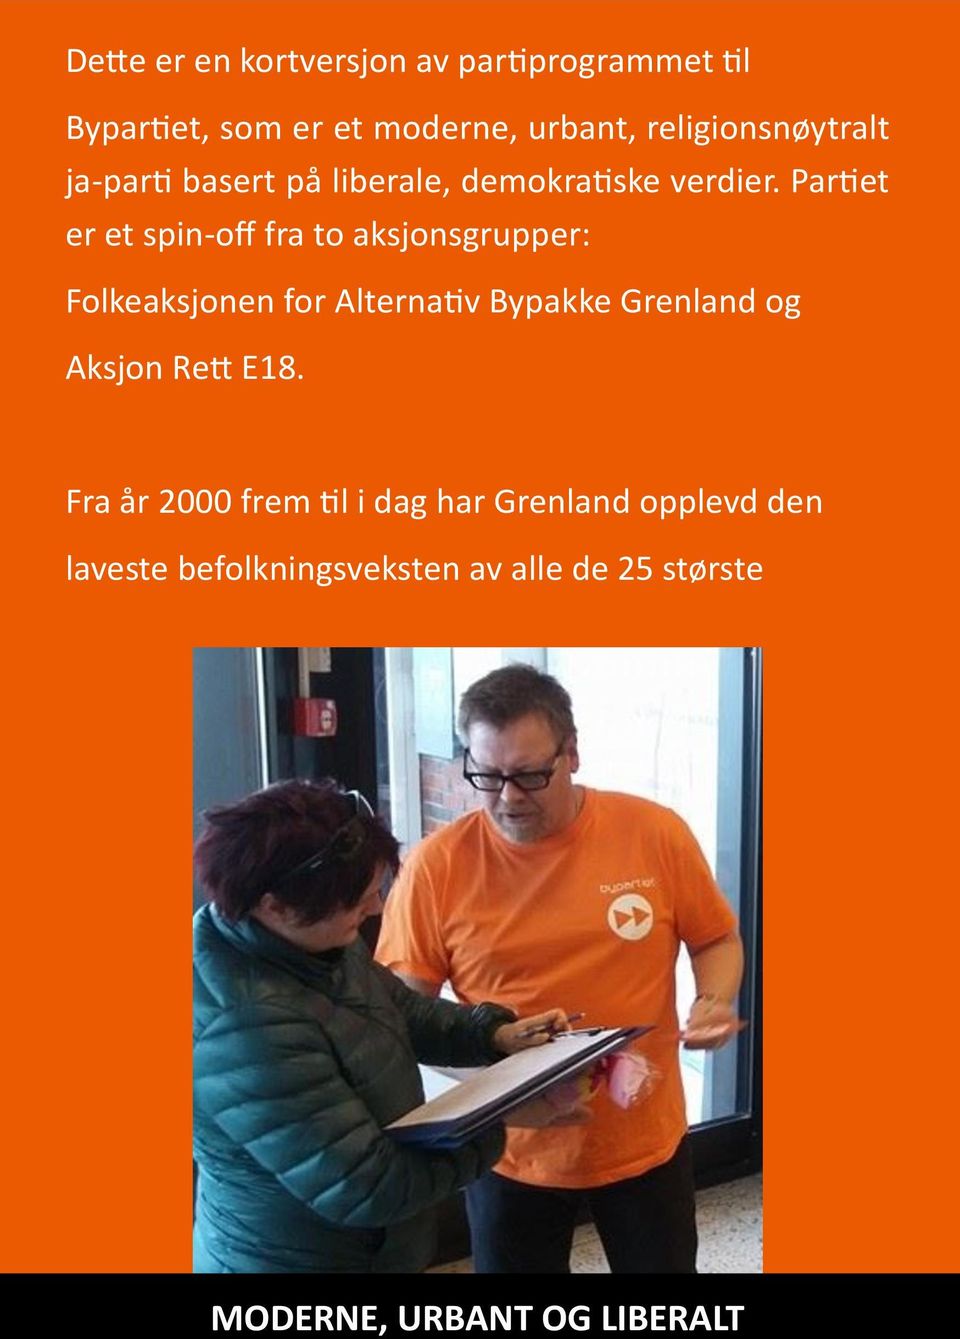 Partiet er et spin-off fra to aksjonsgrupper: Folkeaksjonen for Alternativ Bypakke Grenland og